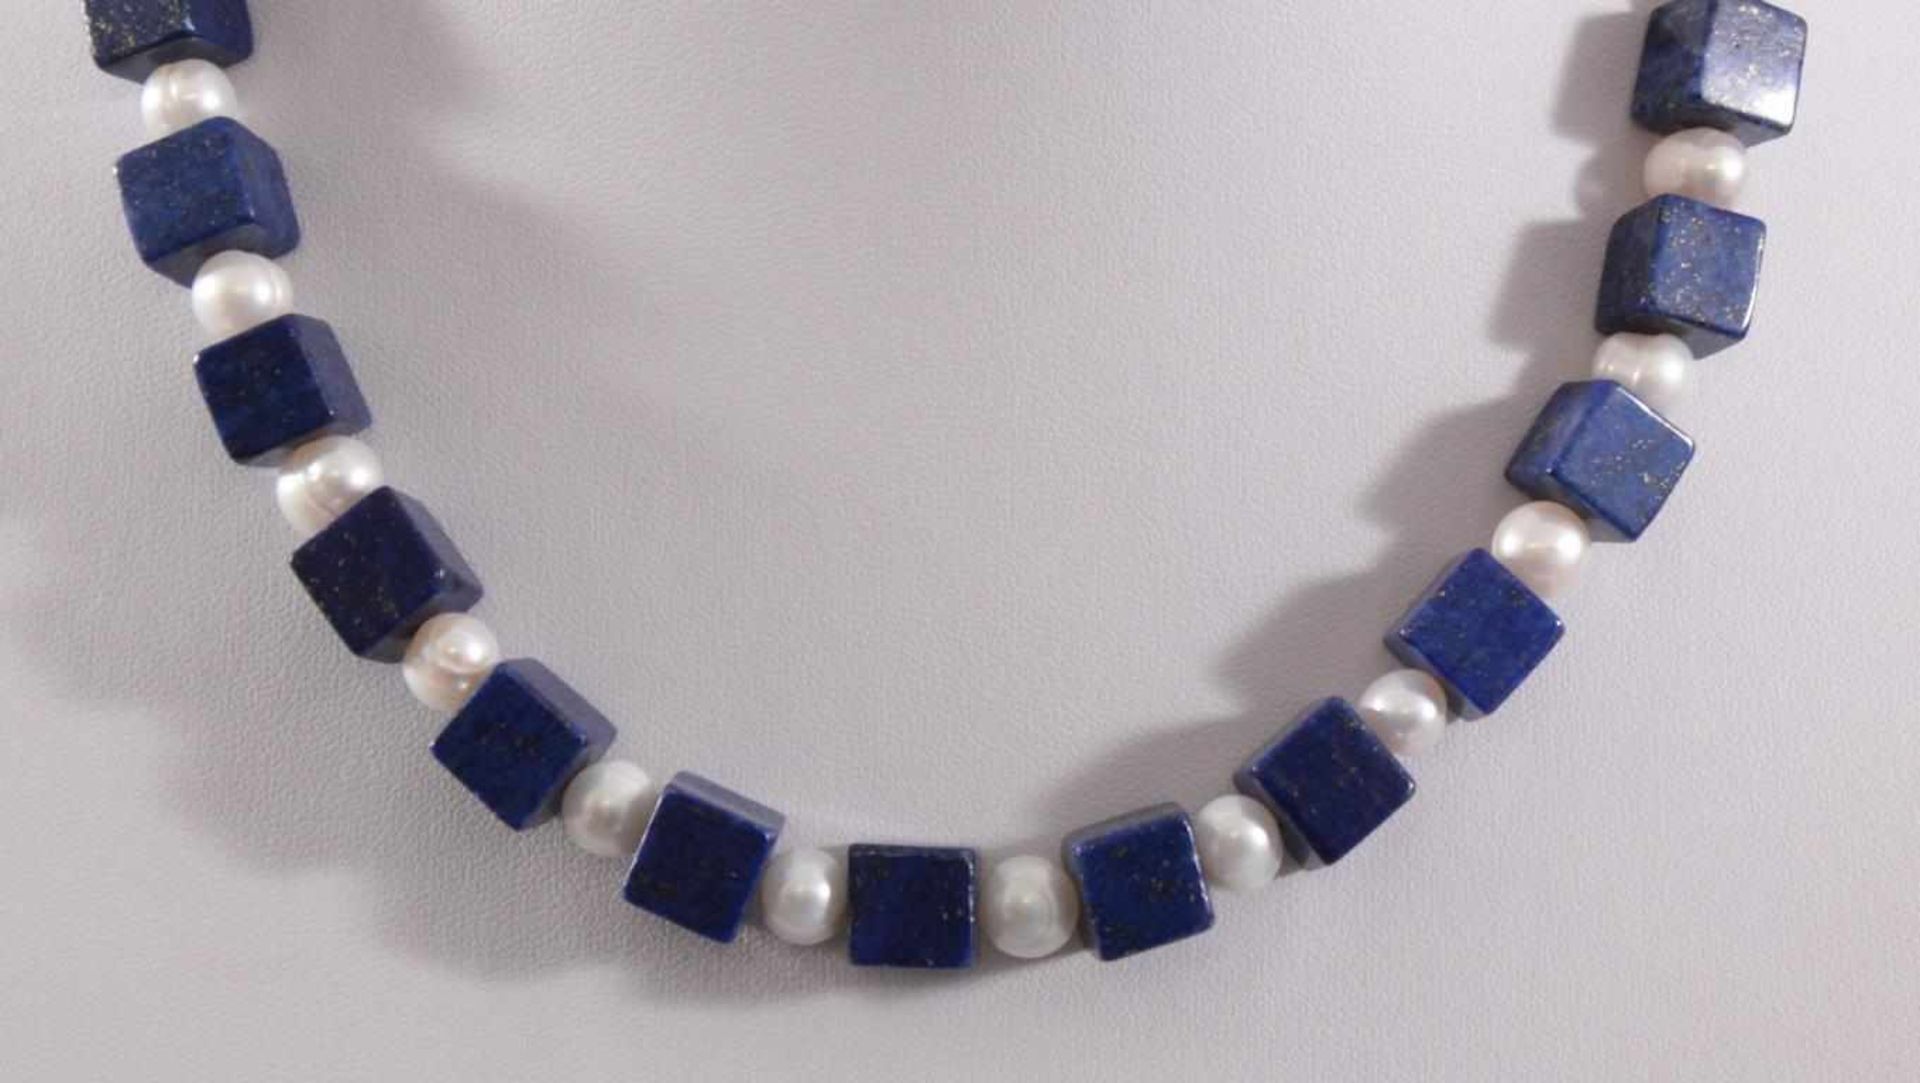 Halskette mit Lapislazuli-Steinen und Frischwasser-PerlenKarabiner-Verschluss aus Sterling Silber, - Bild 2 aus 2